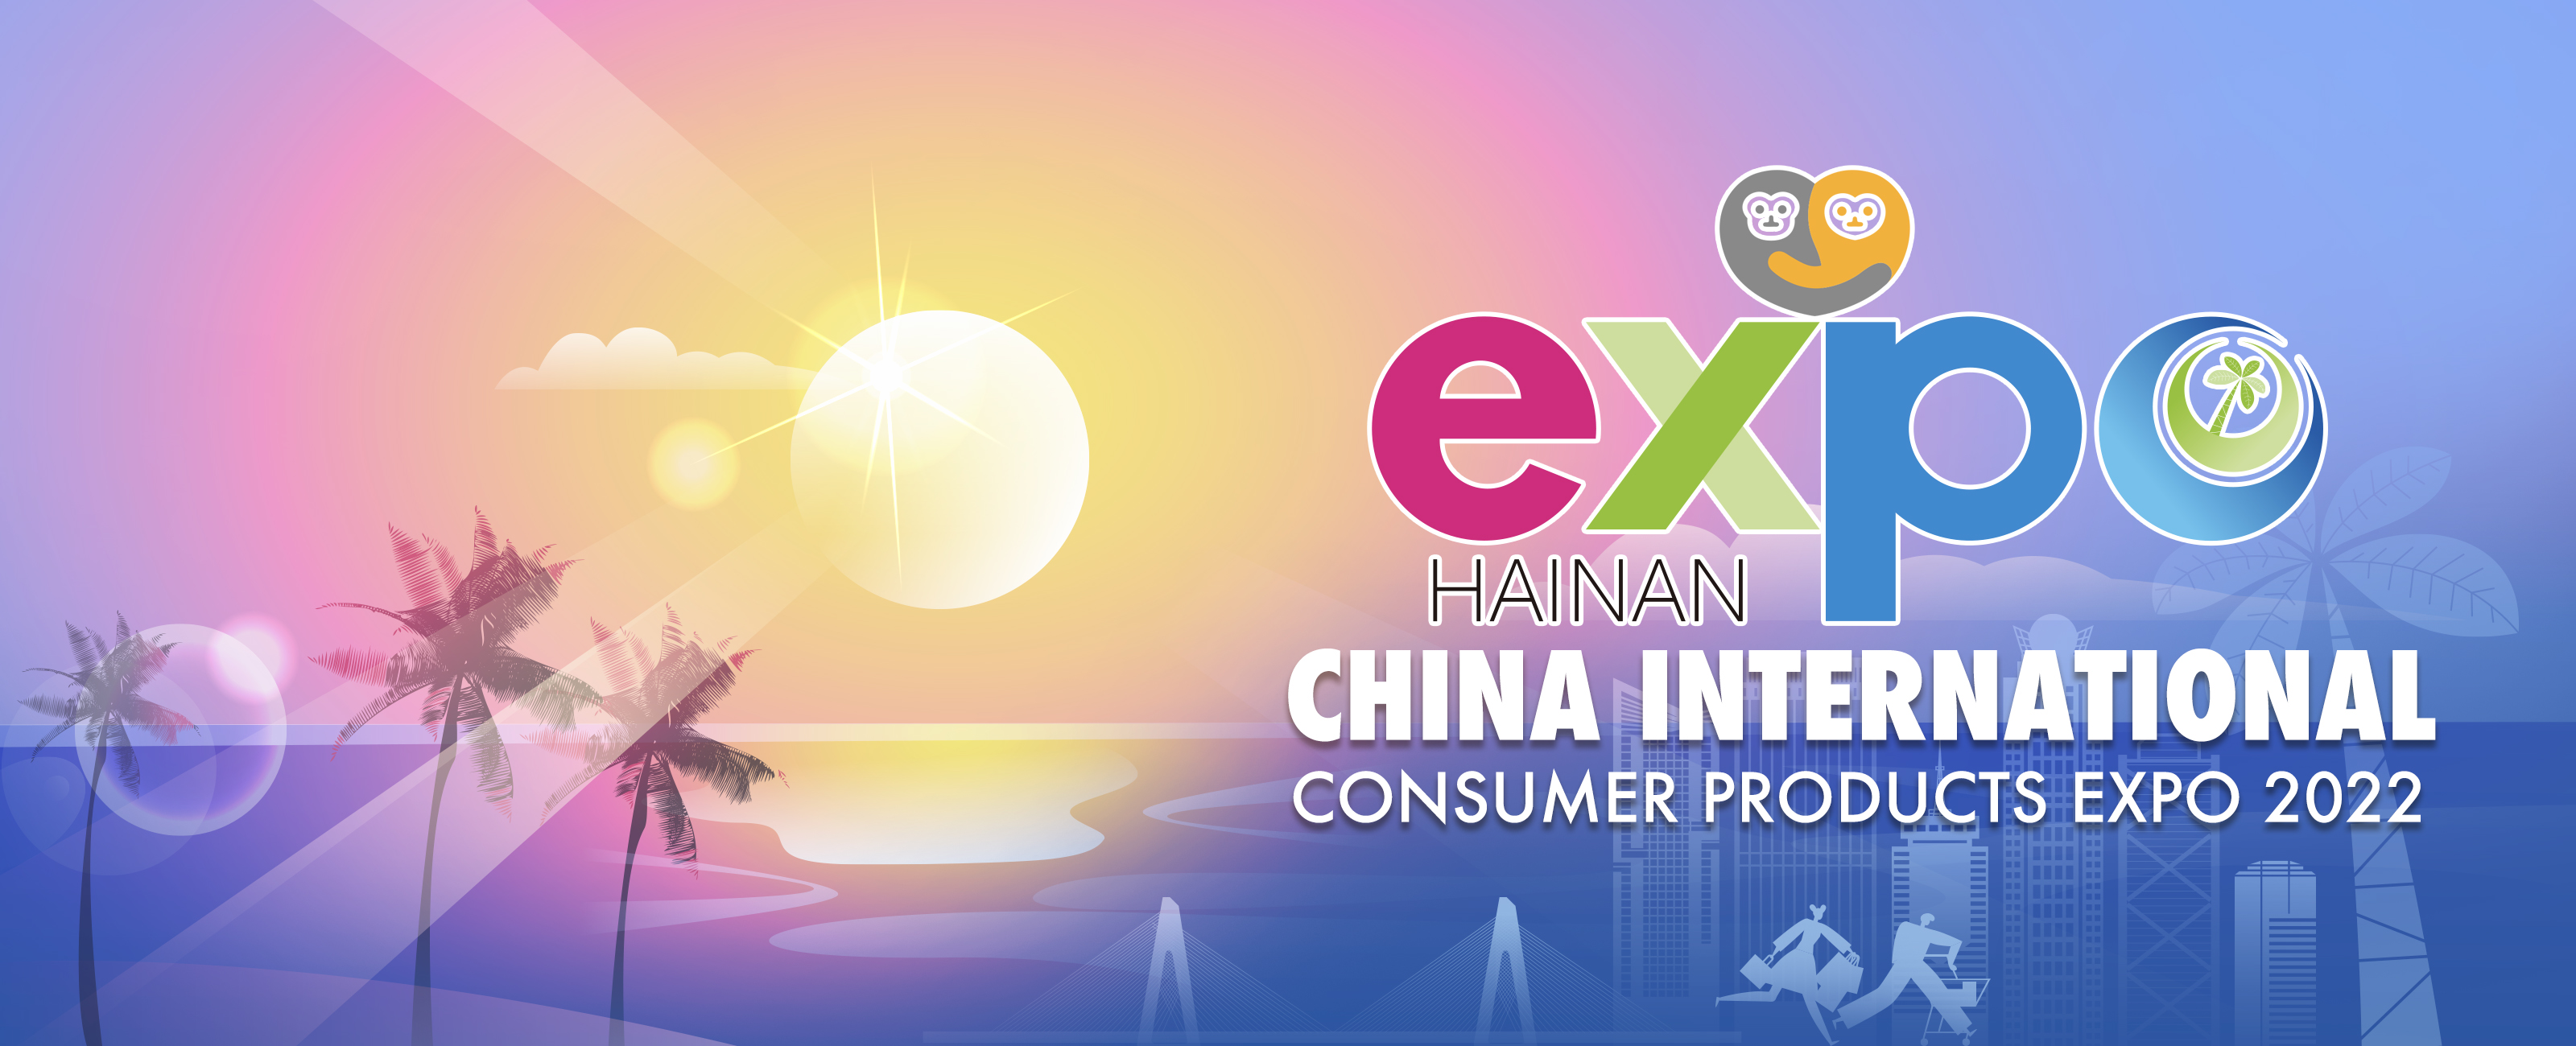 Hainan Expo 2022